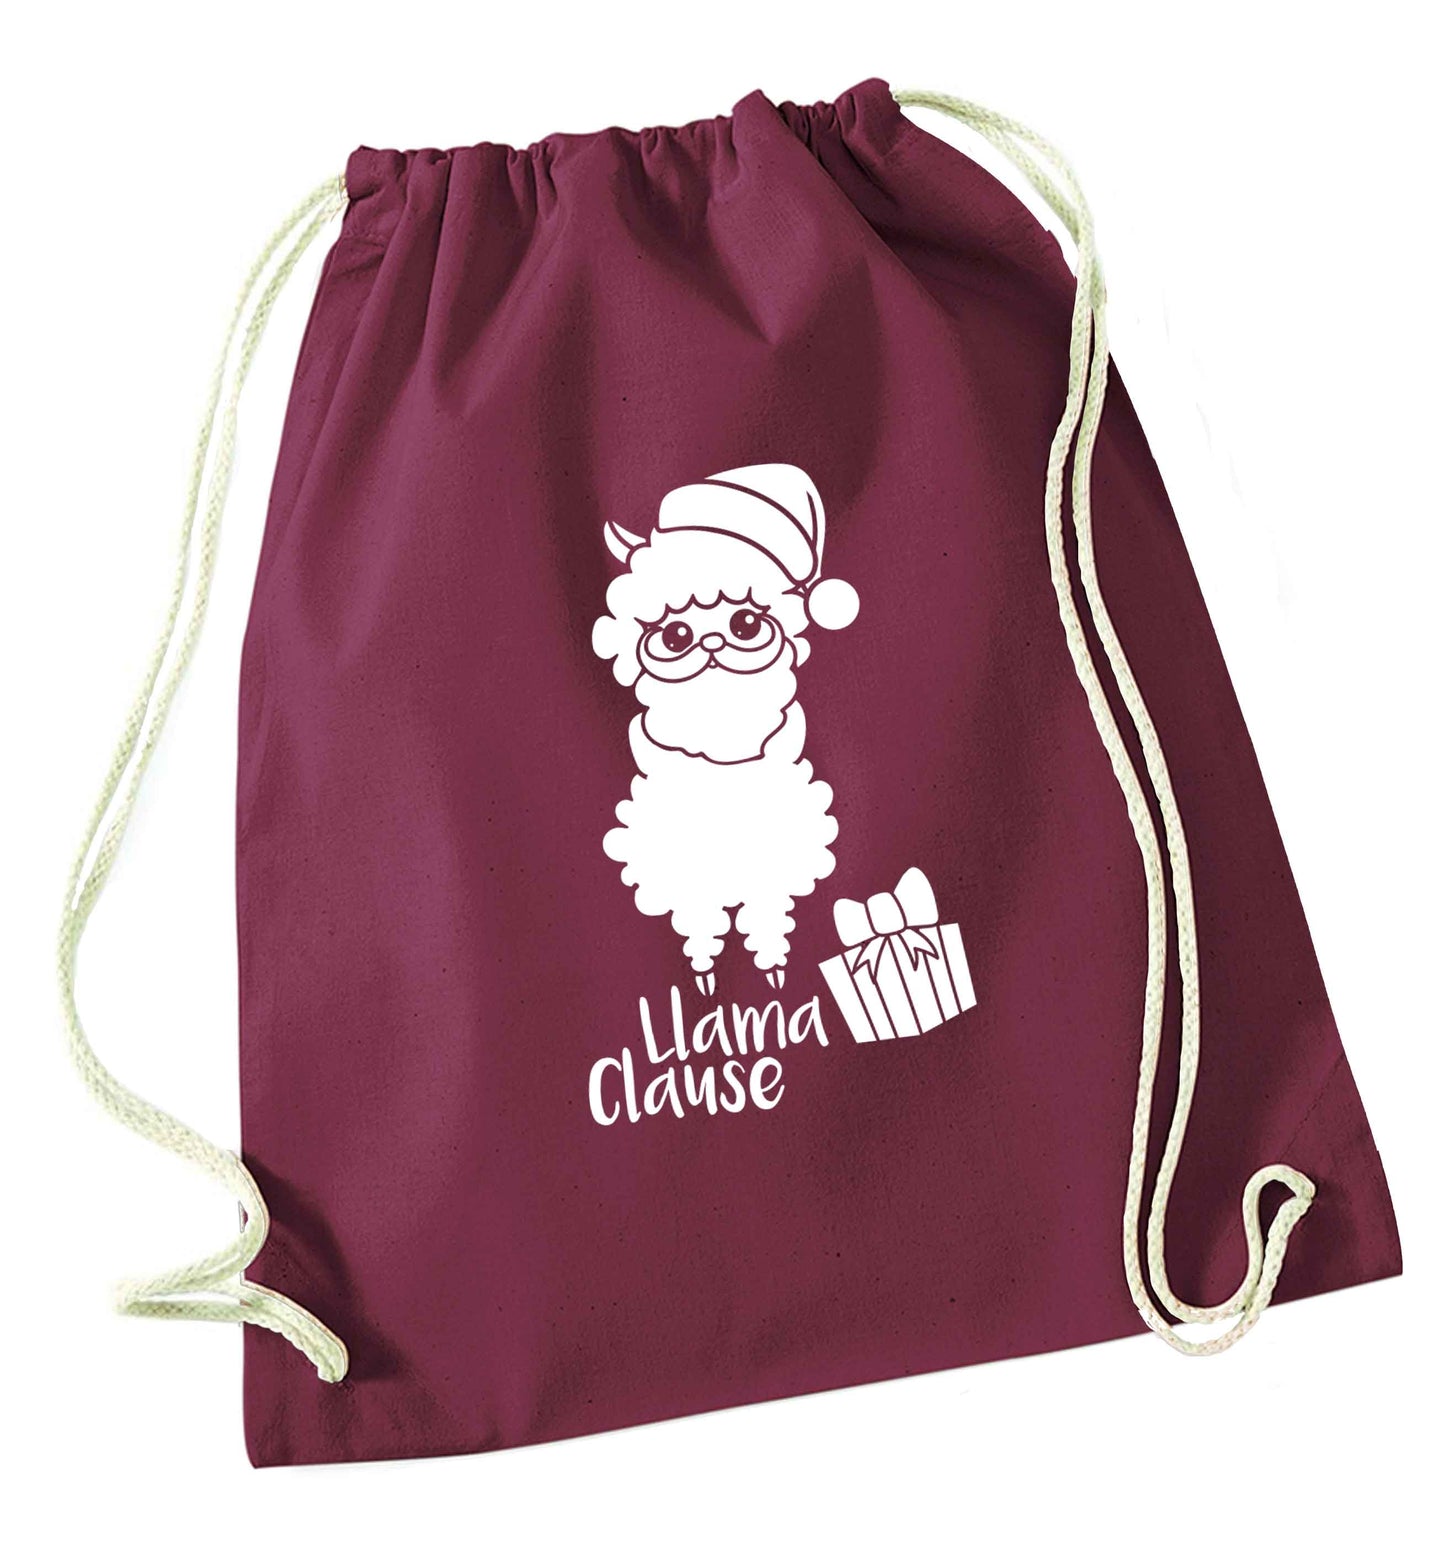 Llama Clause maroon drawstring bag